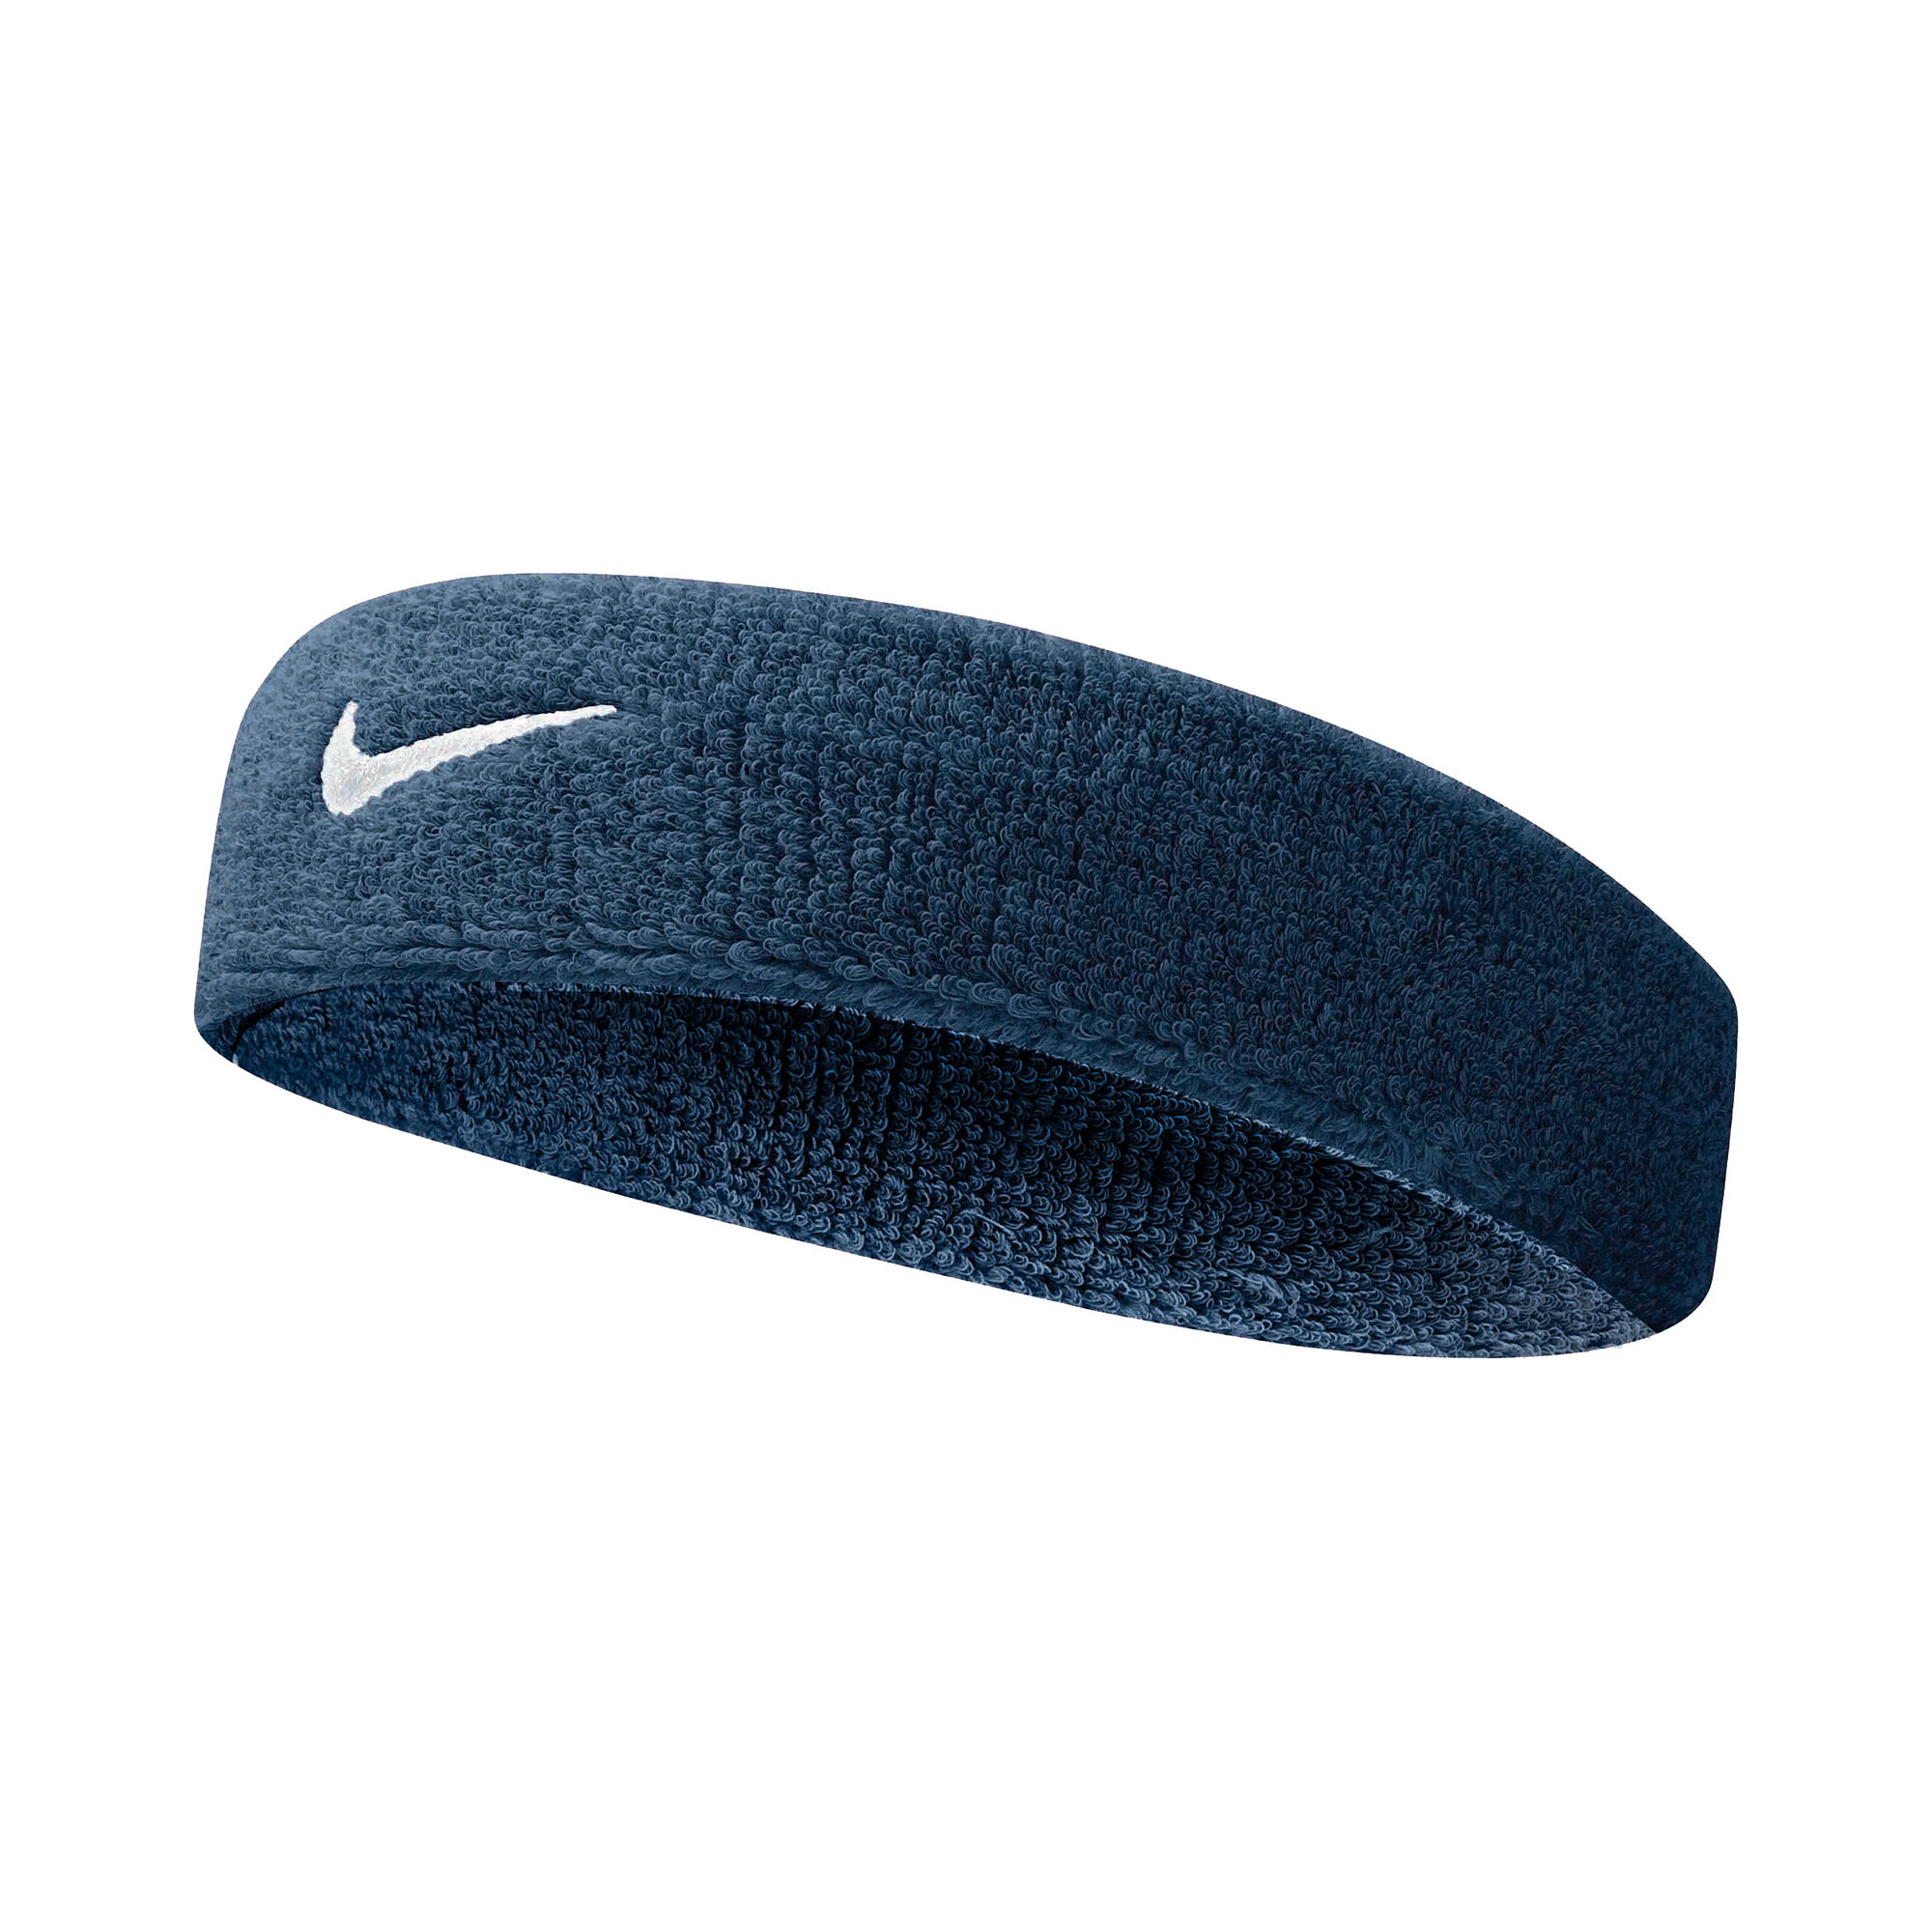 Billy ged Kommunisme Ved navn Nike Swoosh Pandebånd - Mørkeblå, Hvid køb online | Tennis-Point